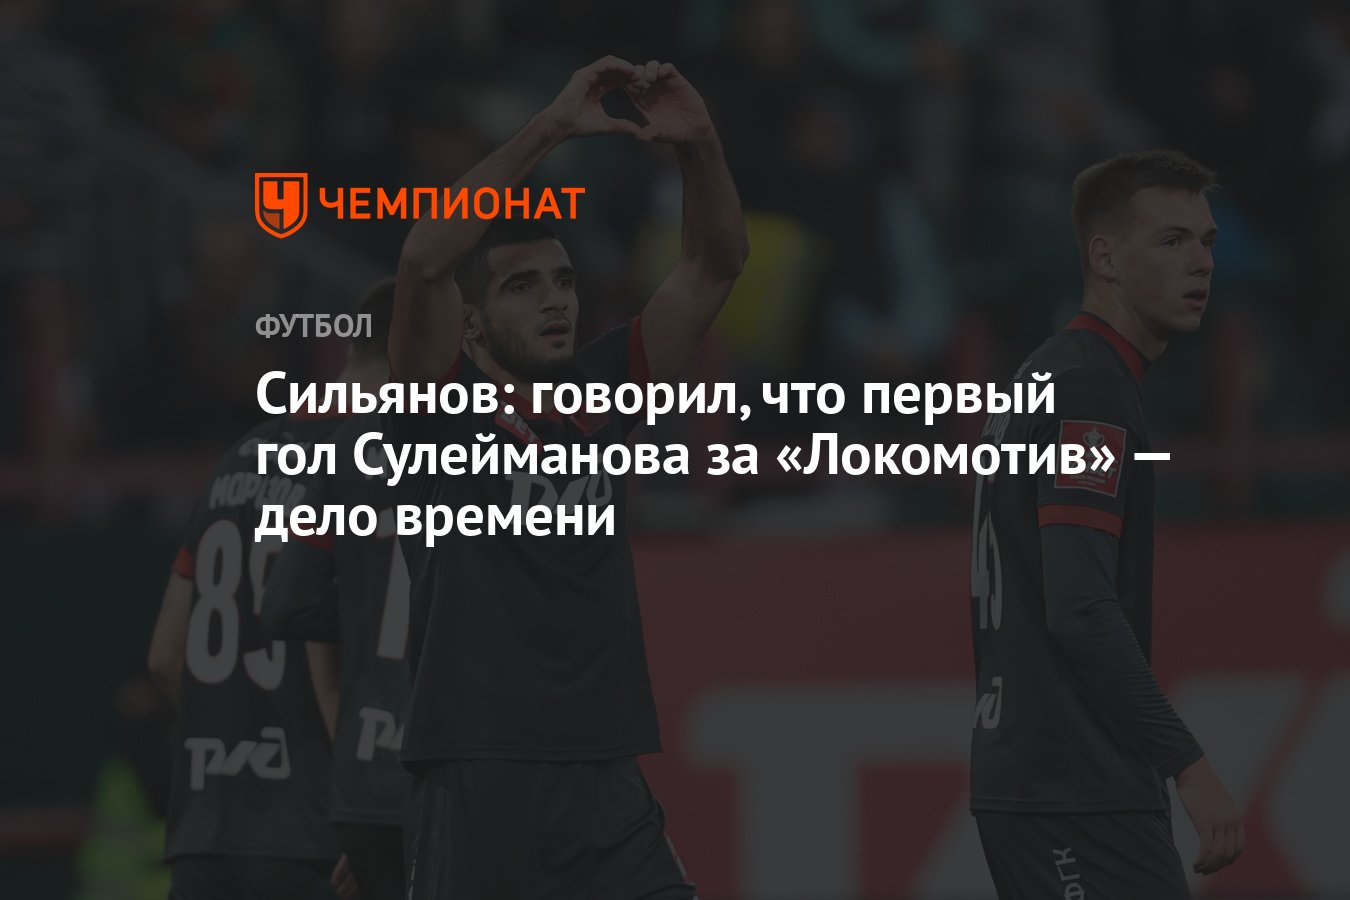 Сильянов: говорил, что первый гол Сулейманова за «Локомотив» — дело времени  - Чемпионат